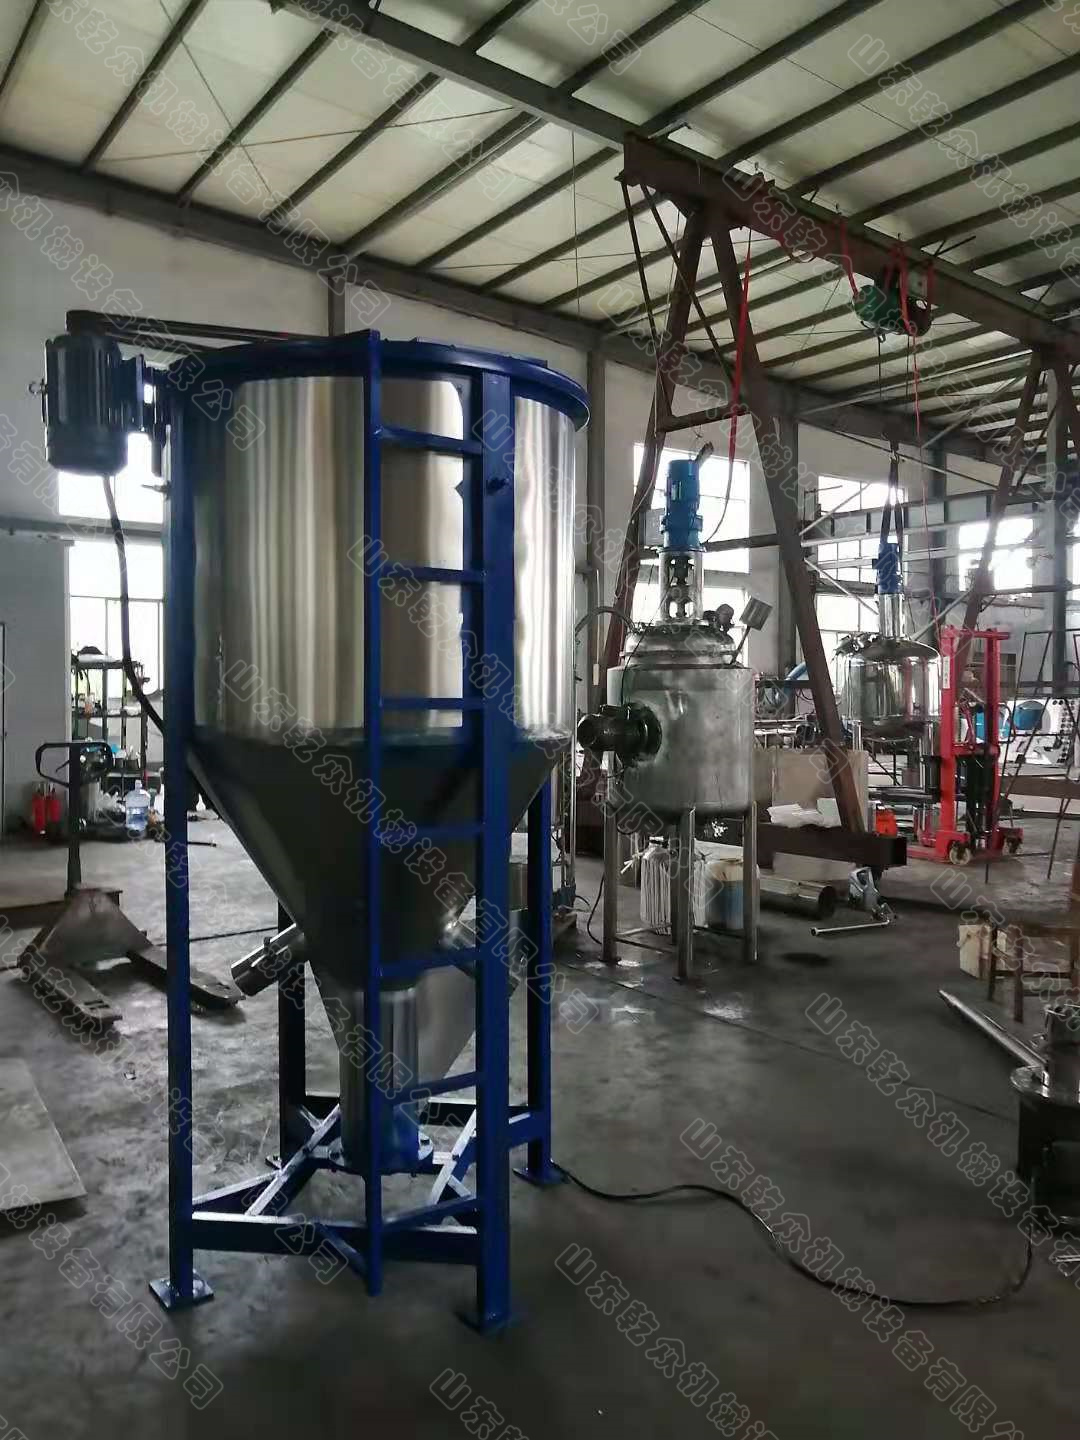 500公斤塑料不锈钢立式搅拌机厂家批发